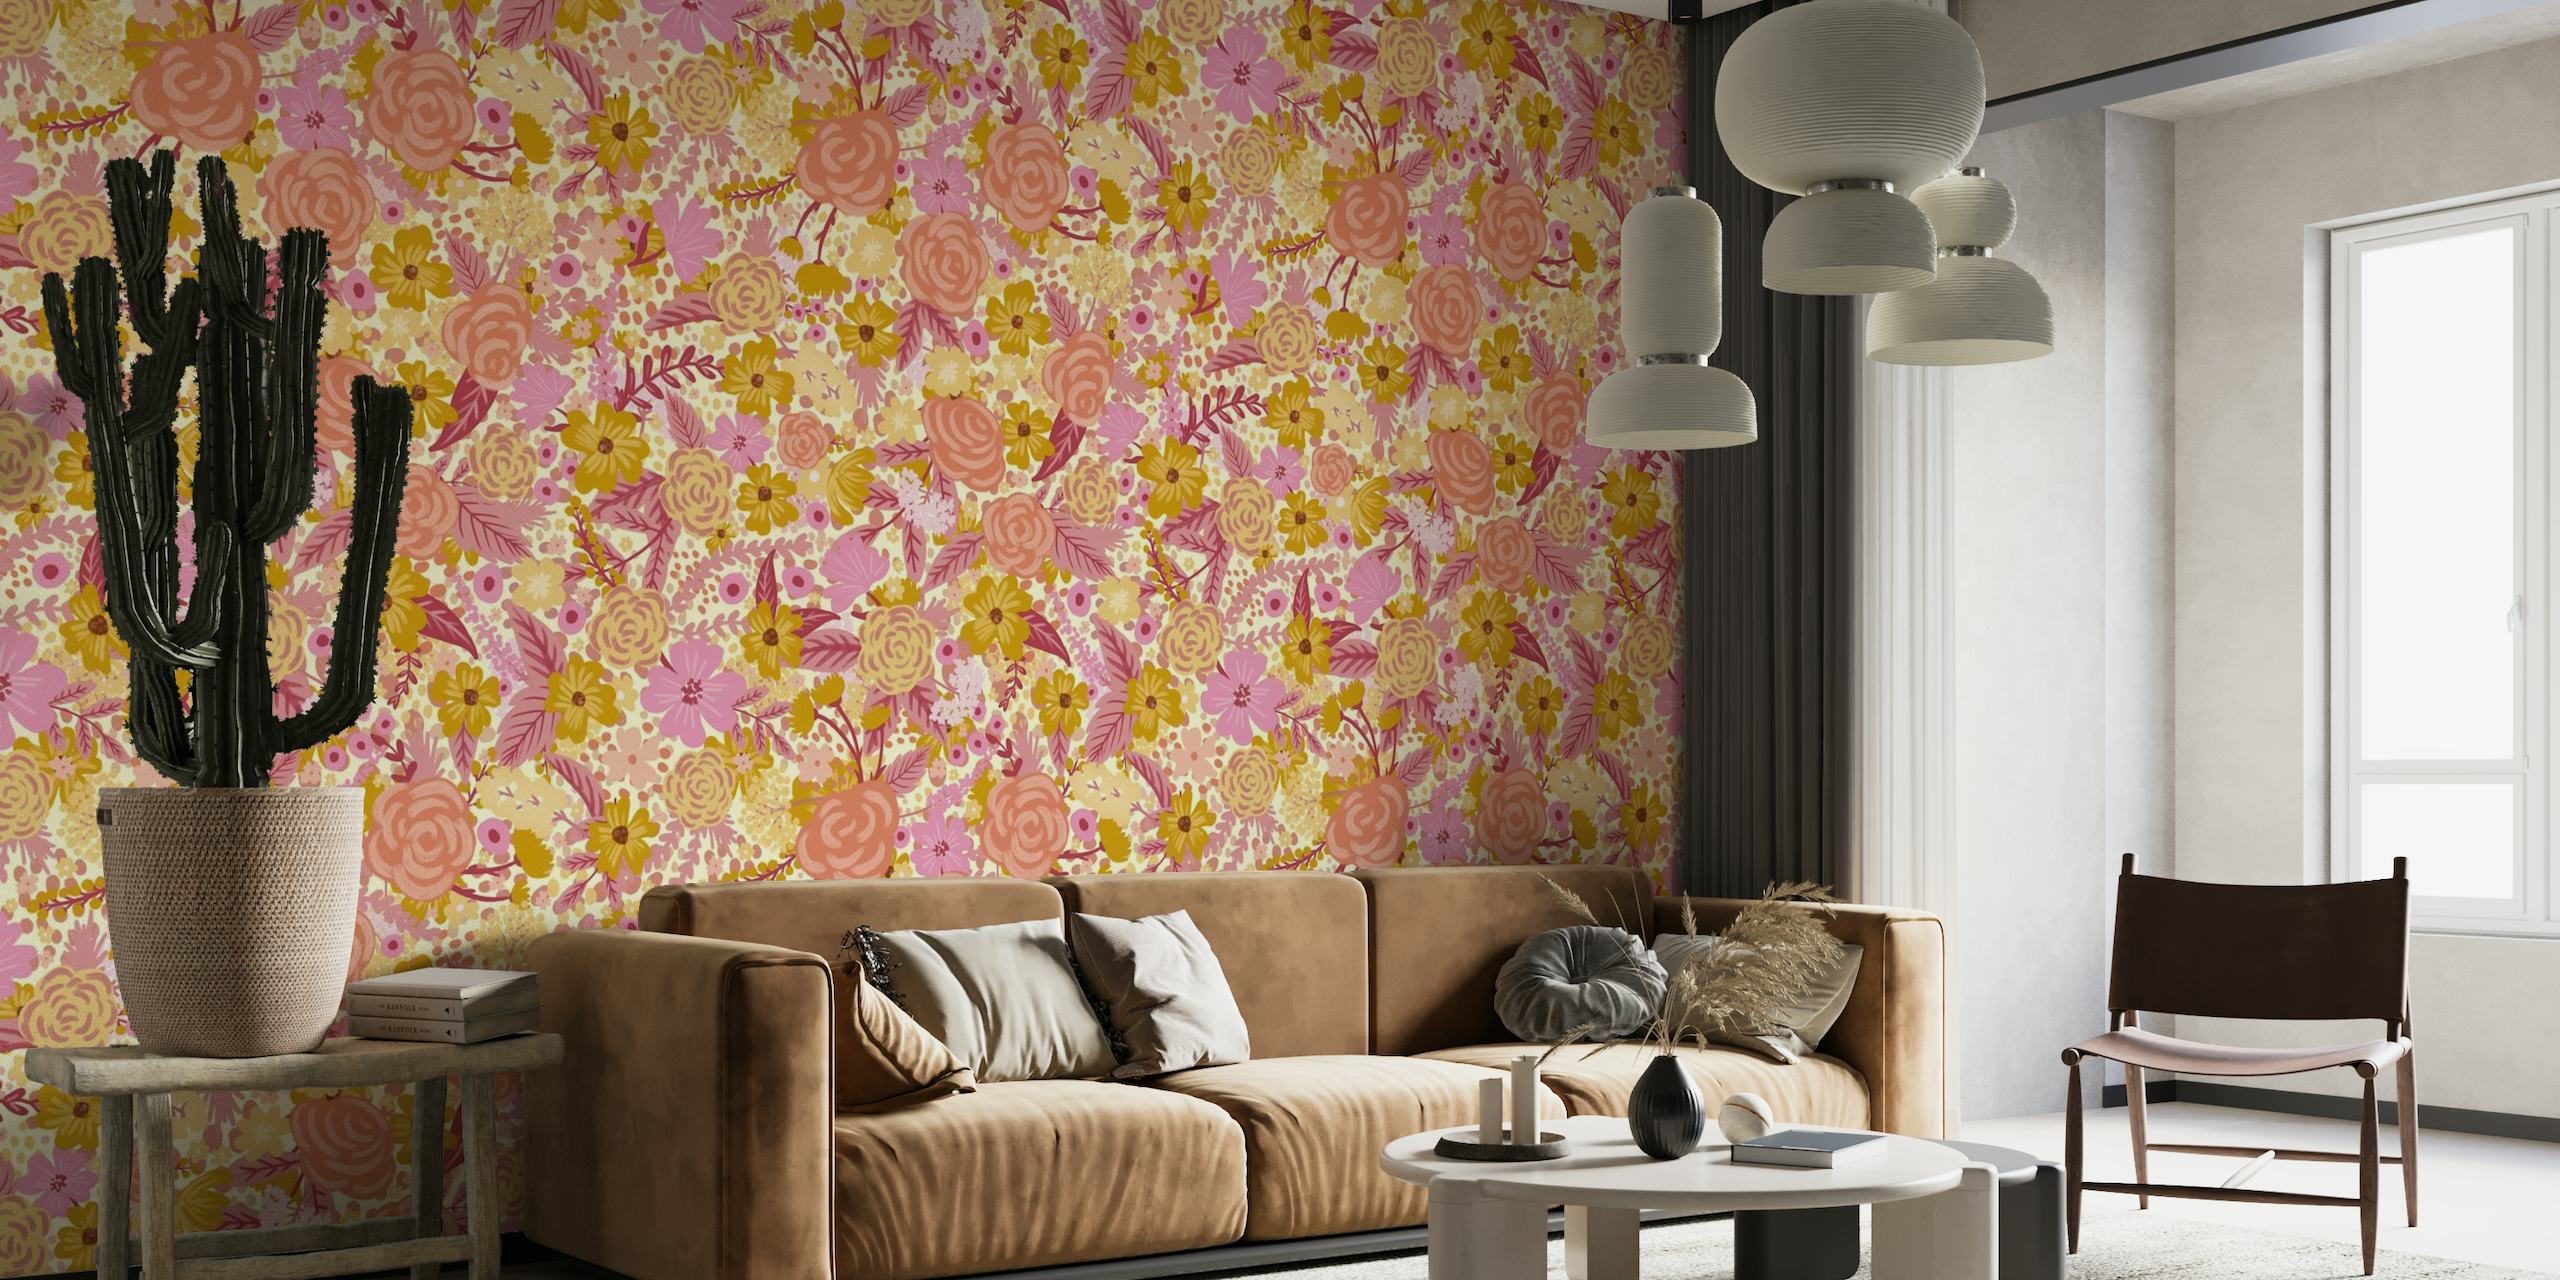 Mural de parede floral abstrato com tons suaves de rosa, dourado e neutro, com rosas e margaridas em um padrão intangível